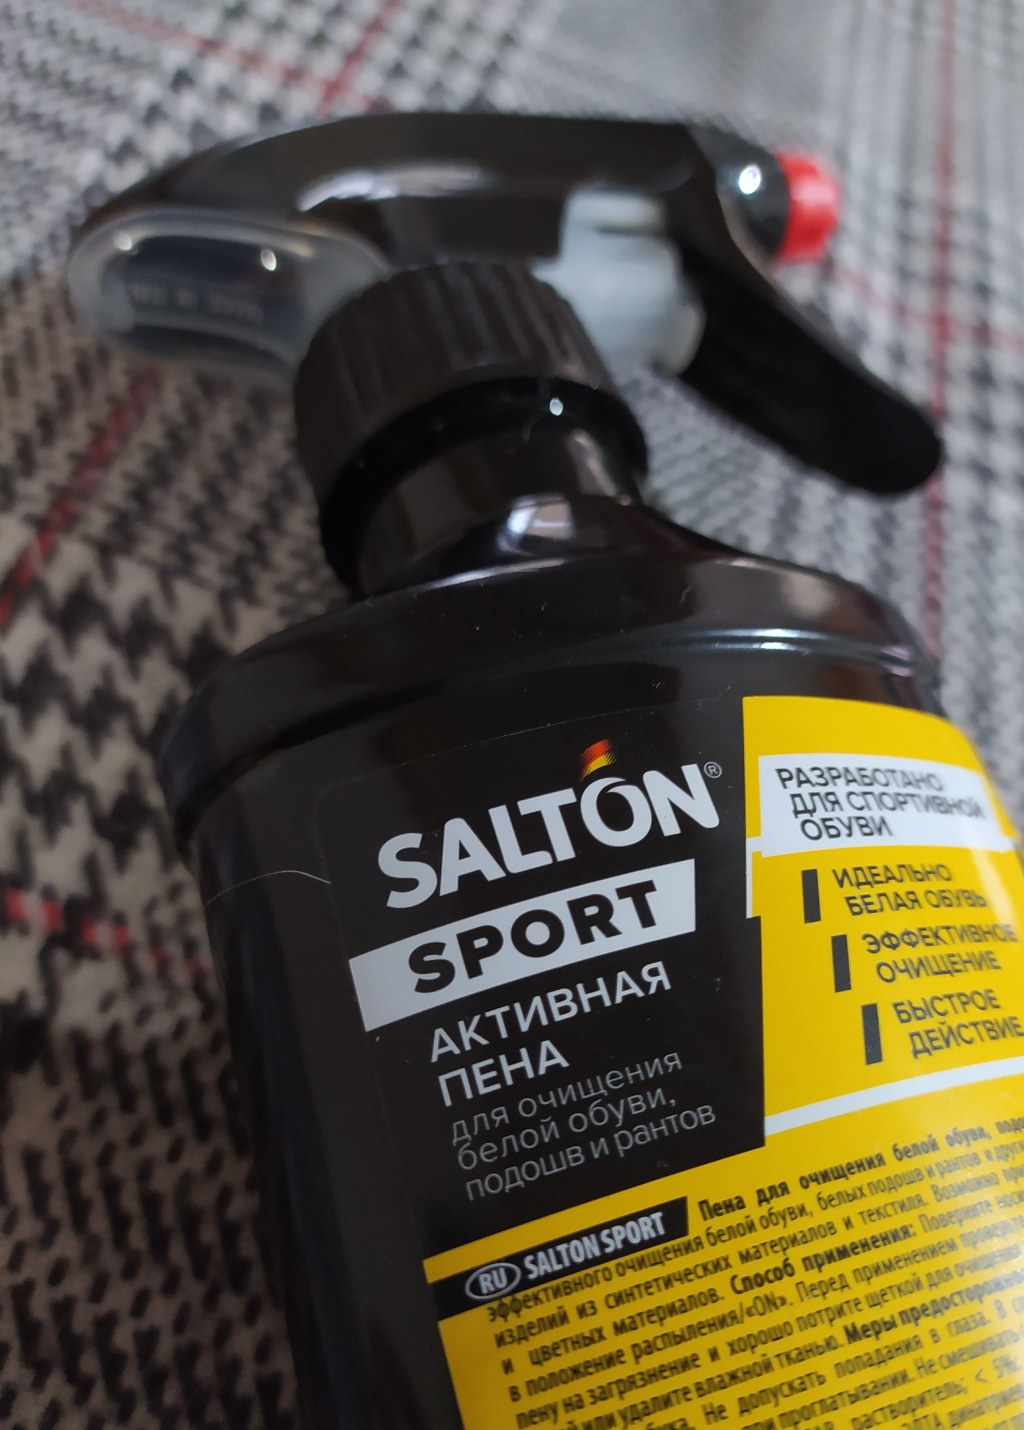 Salton Sport White Express активная пена для очищения белой обуви, подошв и рантов - Качественная продукция